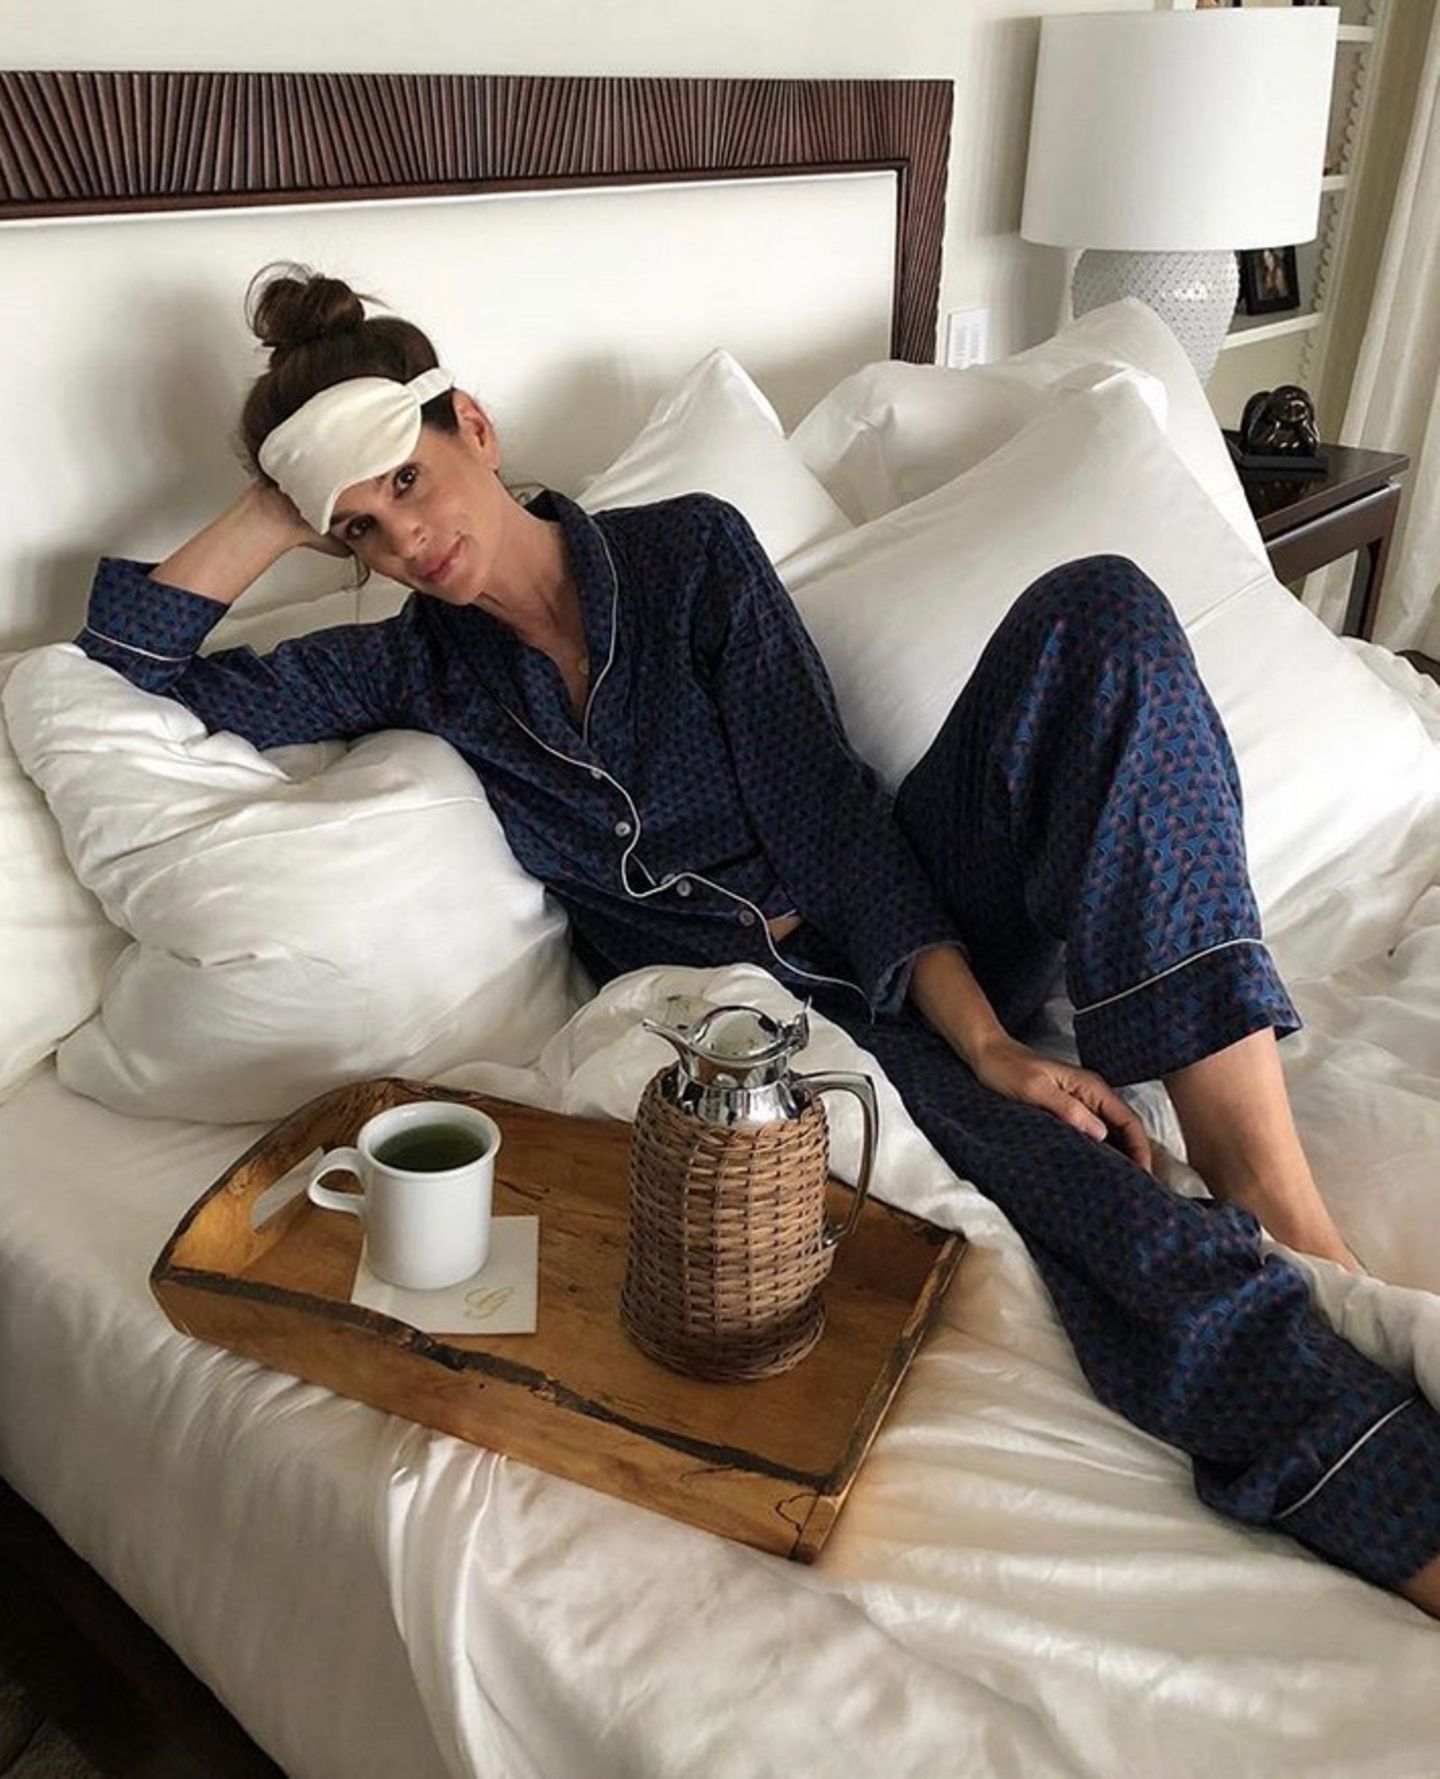 24. Februar 2018  Das Leben eines Topmodels möchte man haben. Cindy Crawford teilt ihre Wochenendpläne mit ihren Instagram-Fans. Das schöne Model möchte demnach offensichtlich im Bett bleiben und Tee trinken. Herrlich gemütlich. 